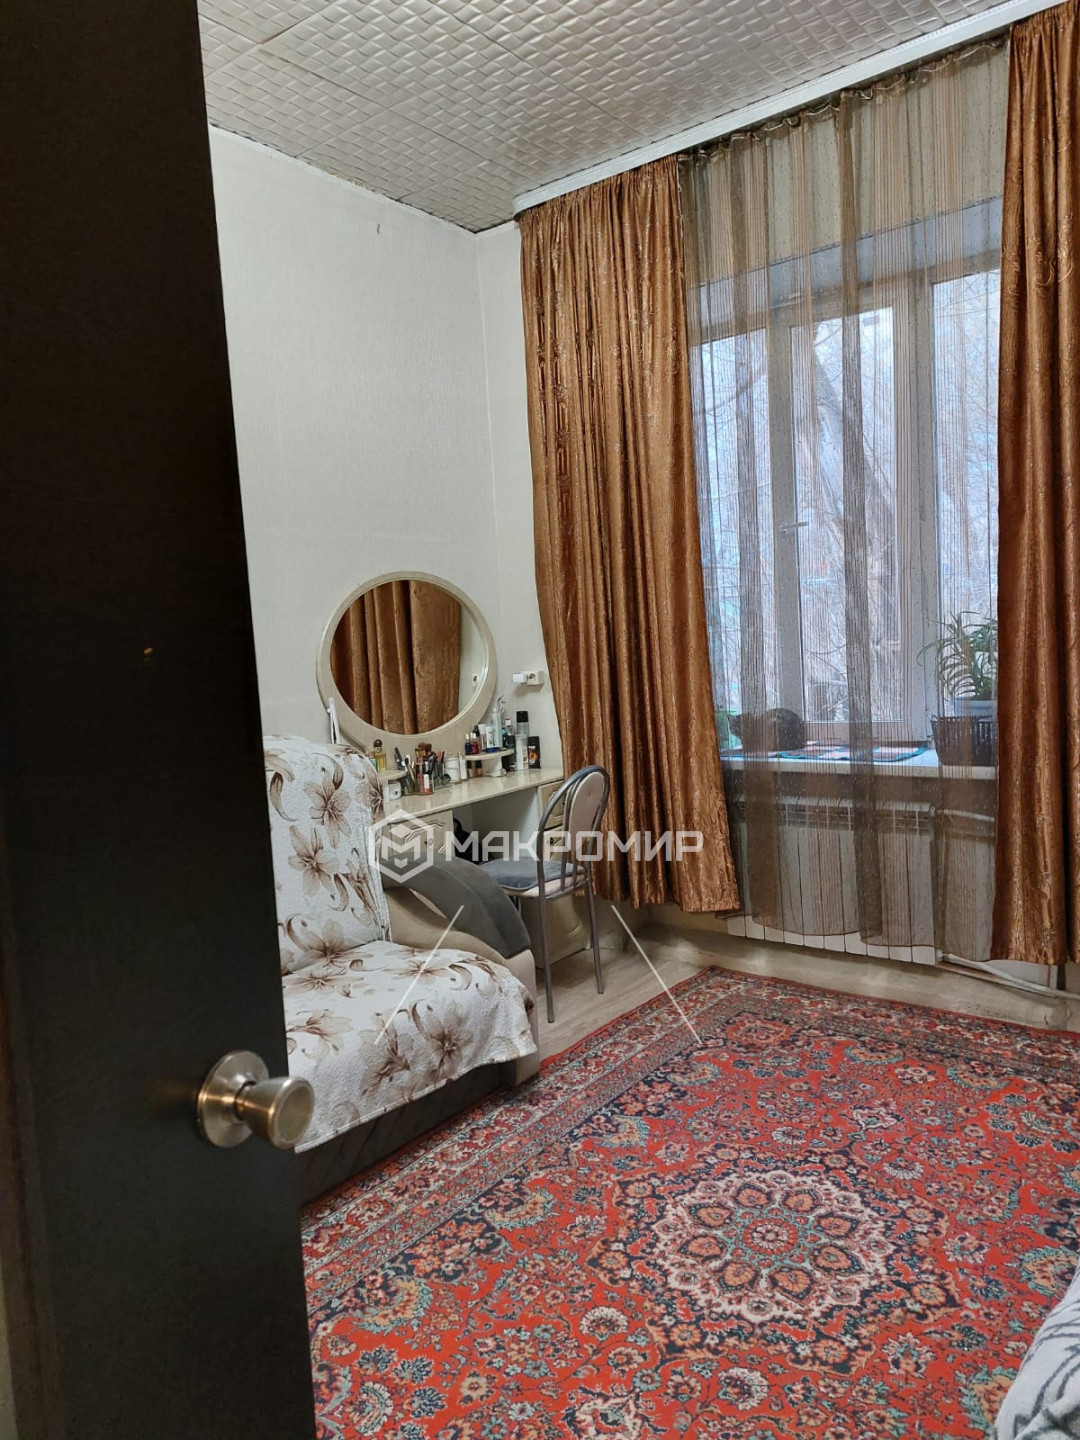 Волочаевская, 51, 2-комнатная квартира